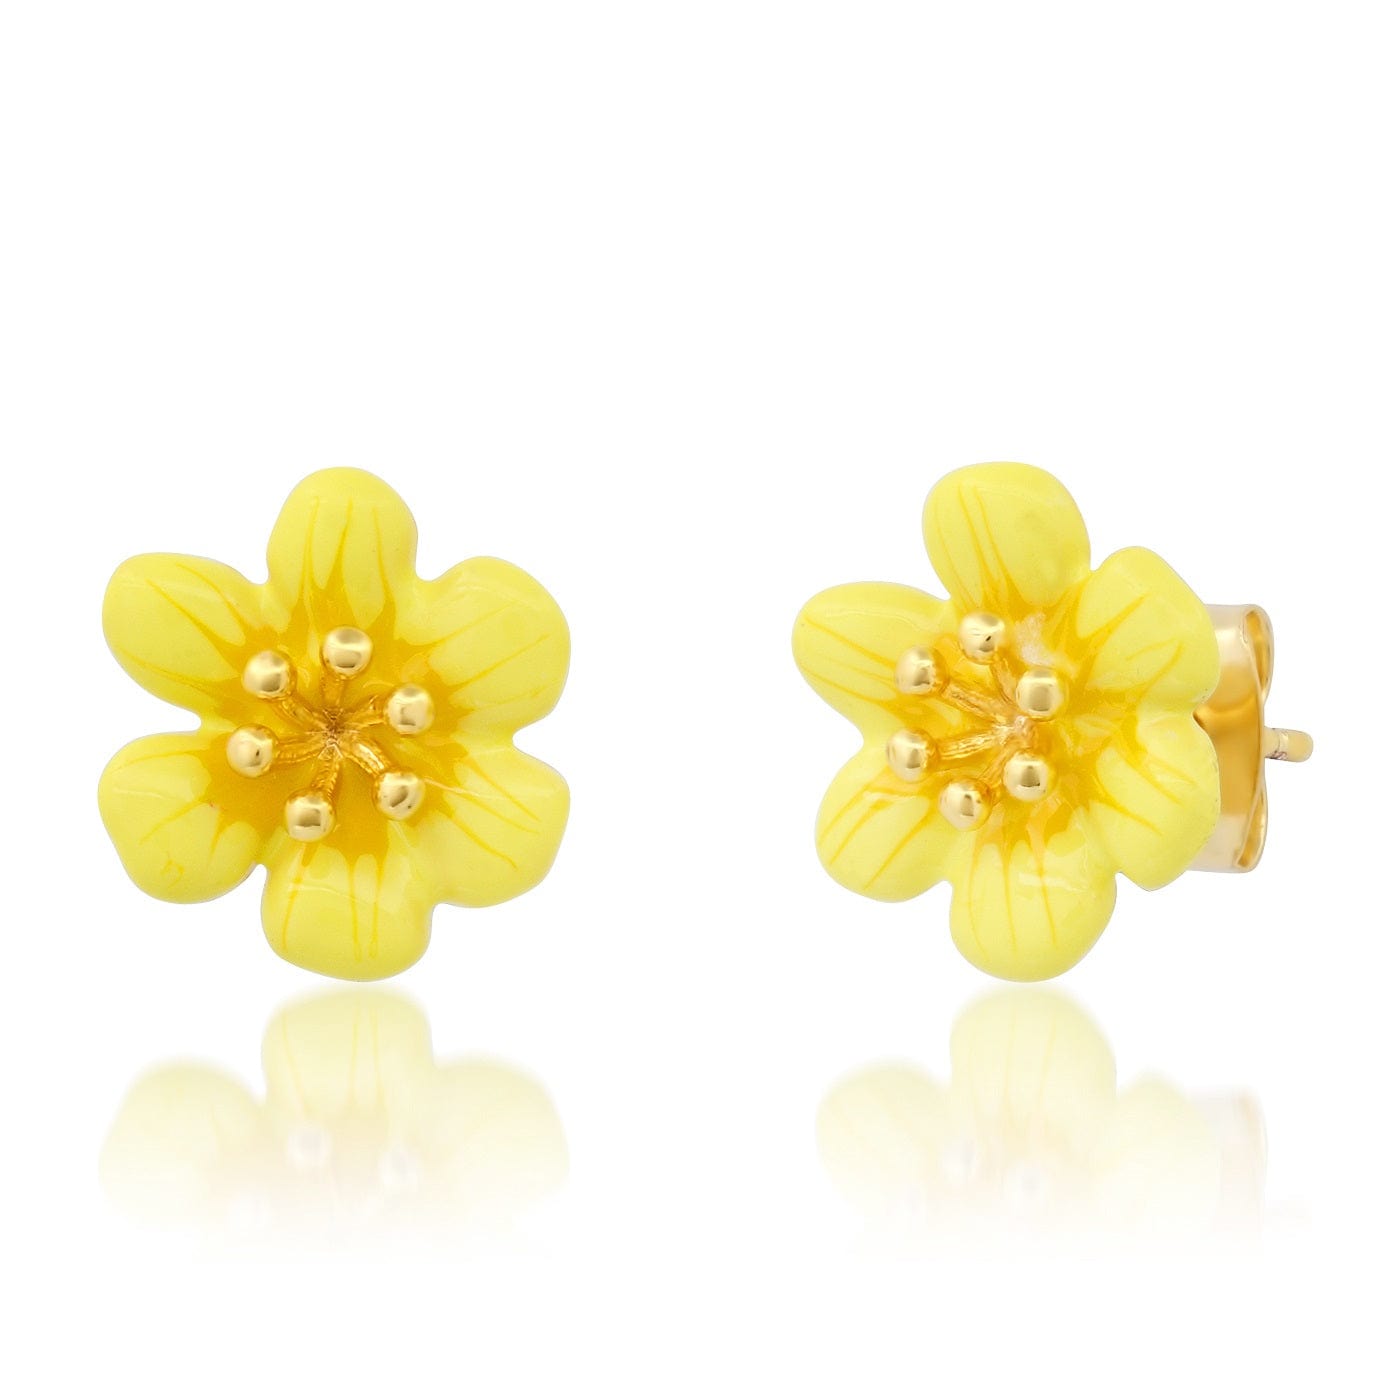 TAI JEWELRY Earrings Yellow Enamel Flower Studs